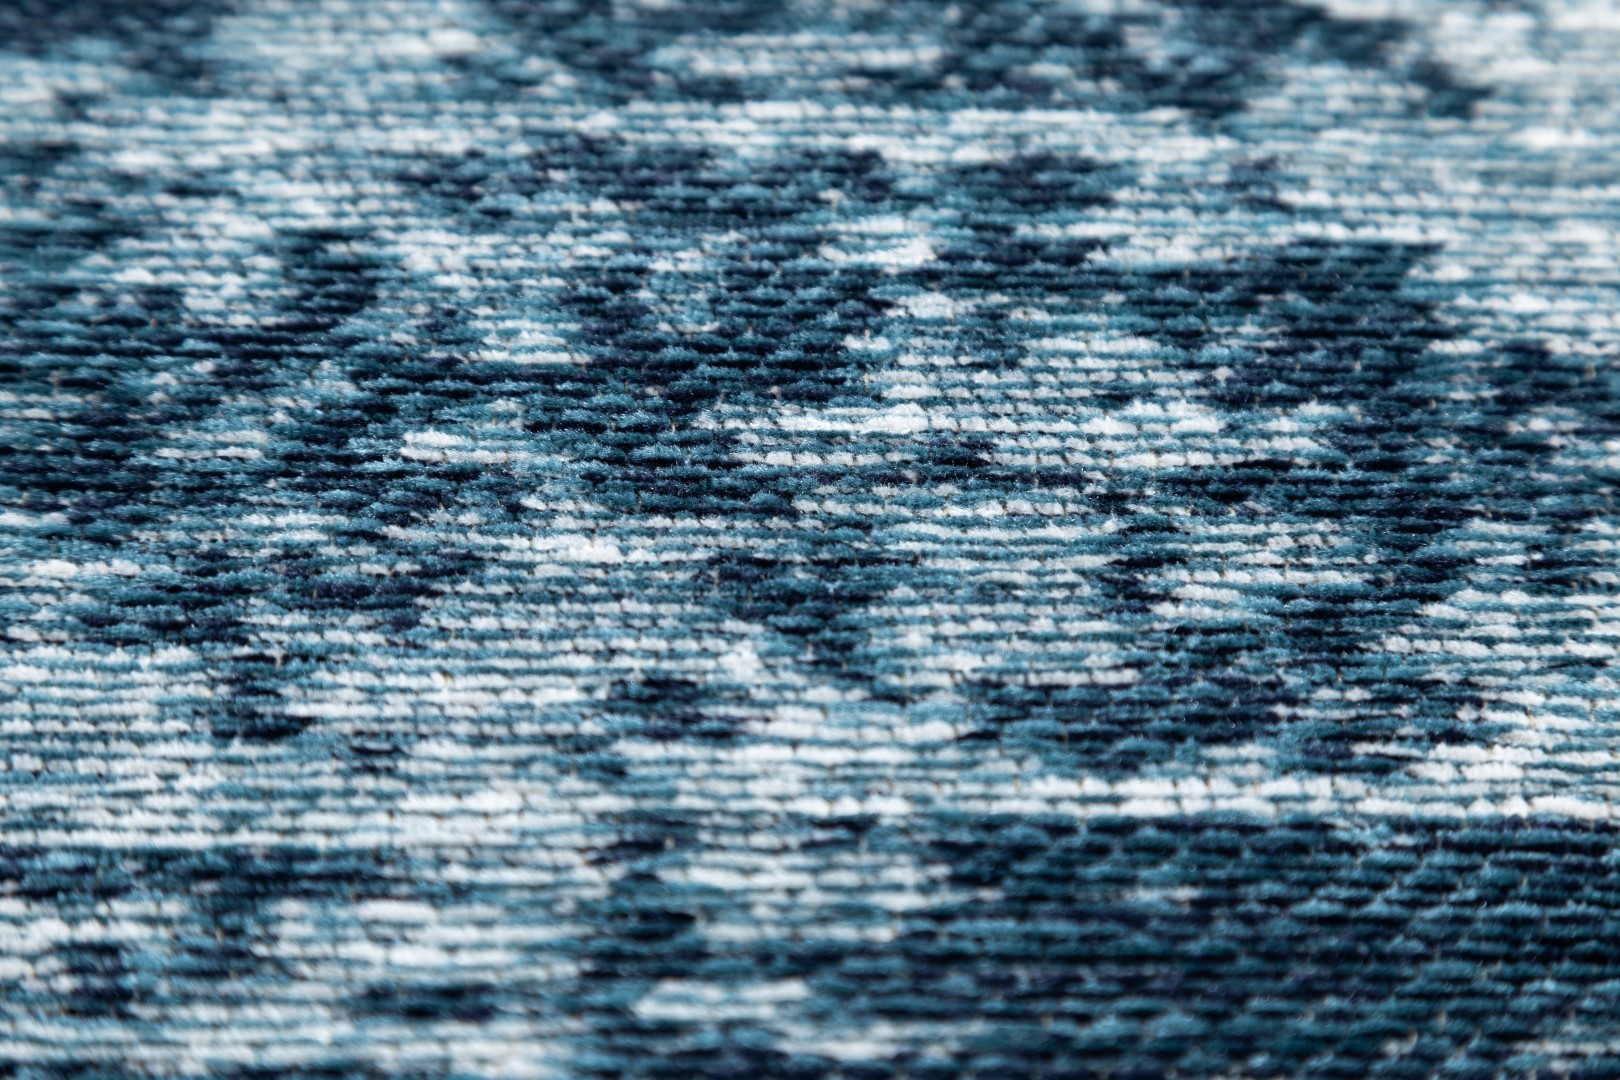 Ковер Flare Aqua FLAREAqua200/300 carpet decor